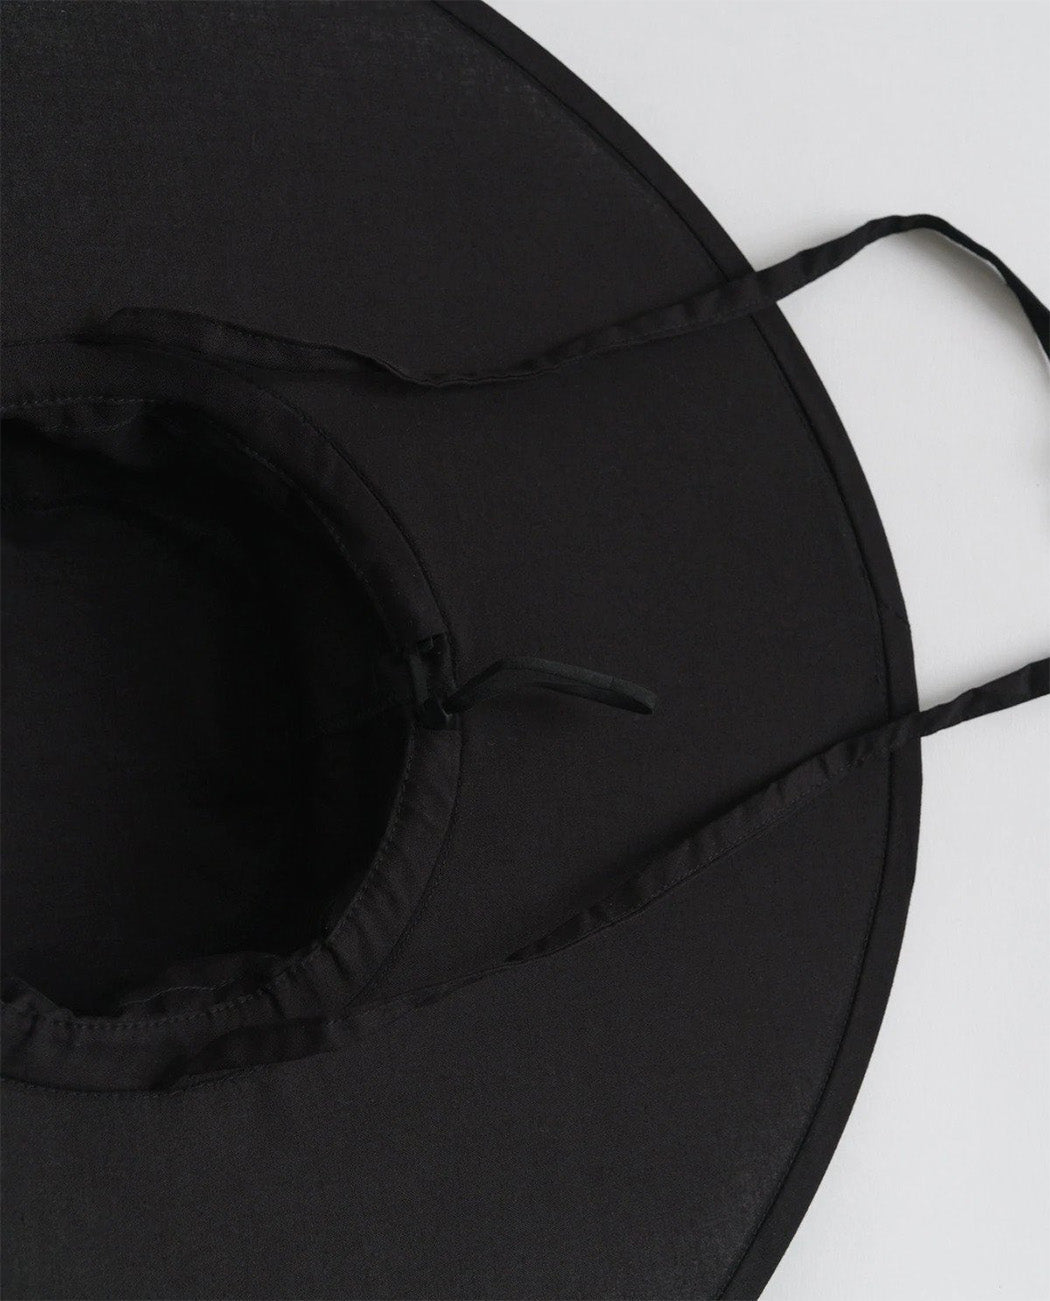 Packable Sun Hat: Black